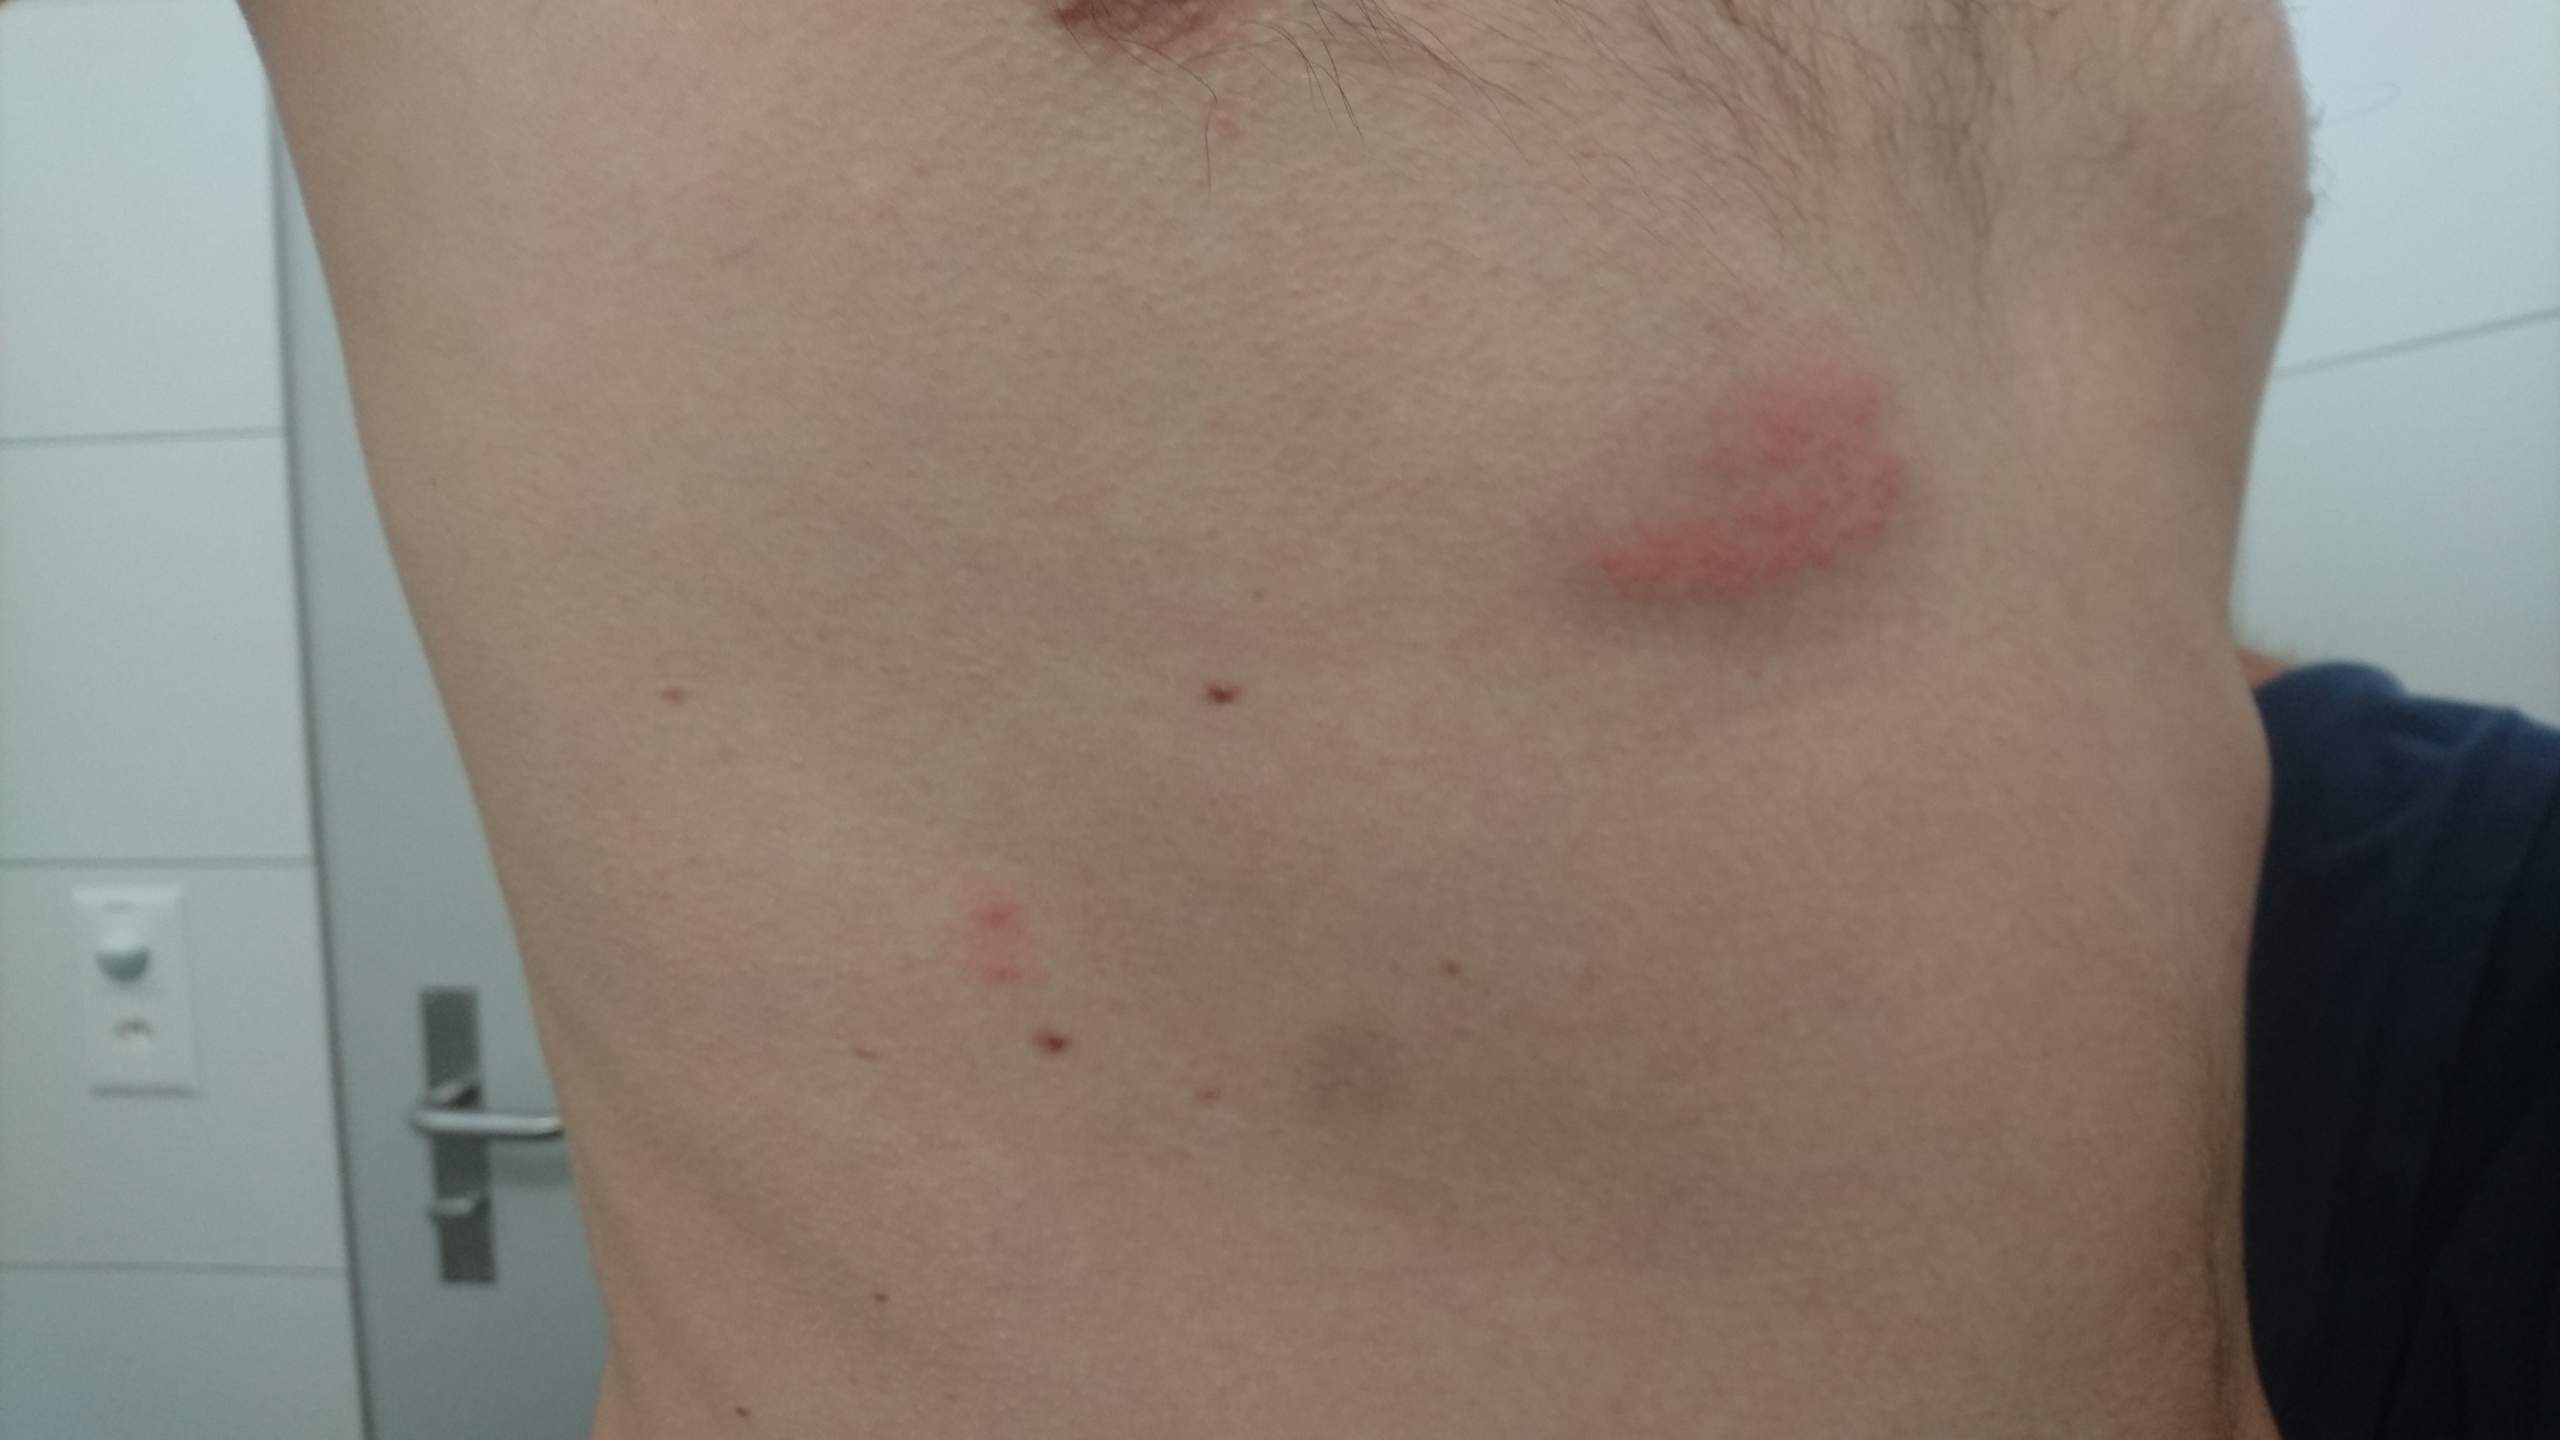 36+ Hautausschlag unter der brust bilder , Hautausschlag unter Brust, Seite, Rücken? (Haut, Ausschlag)